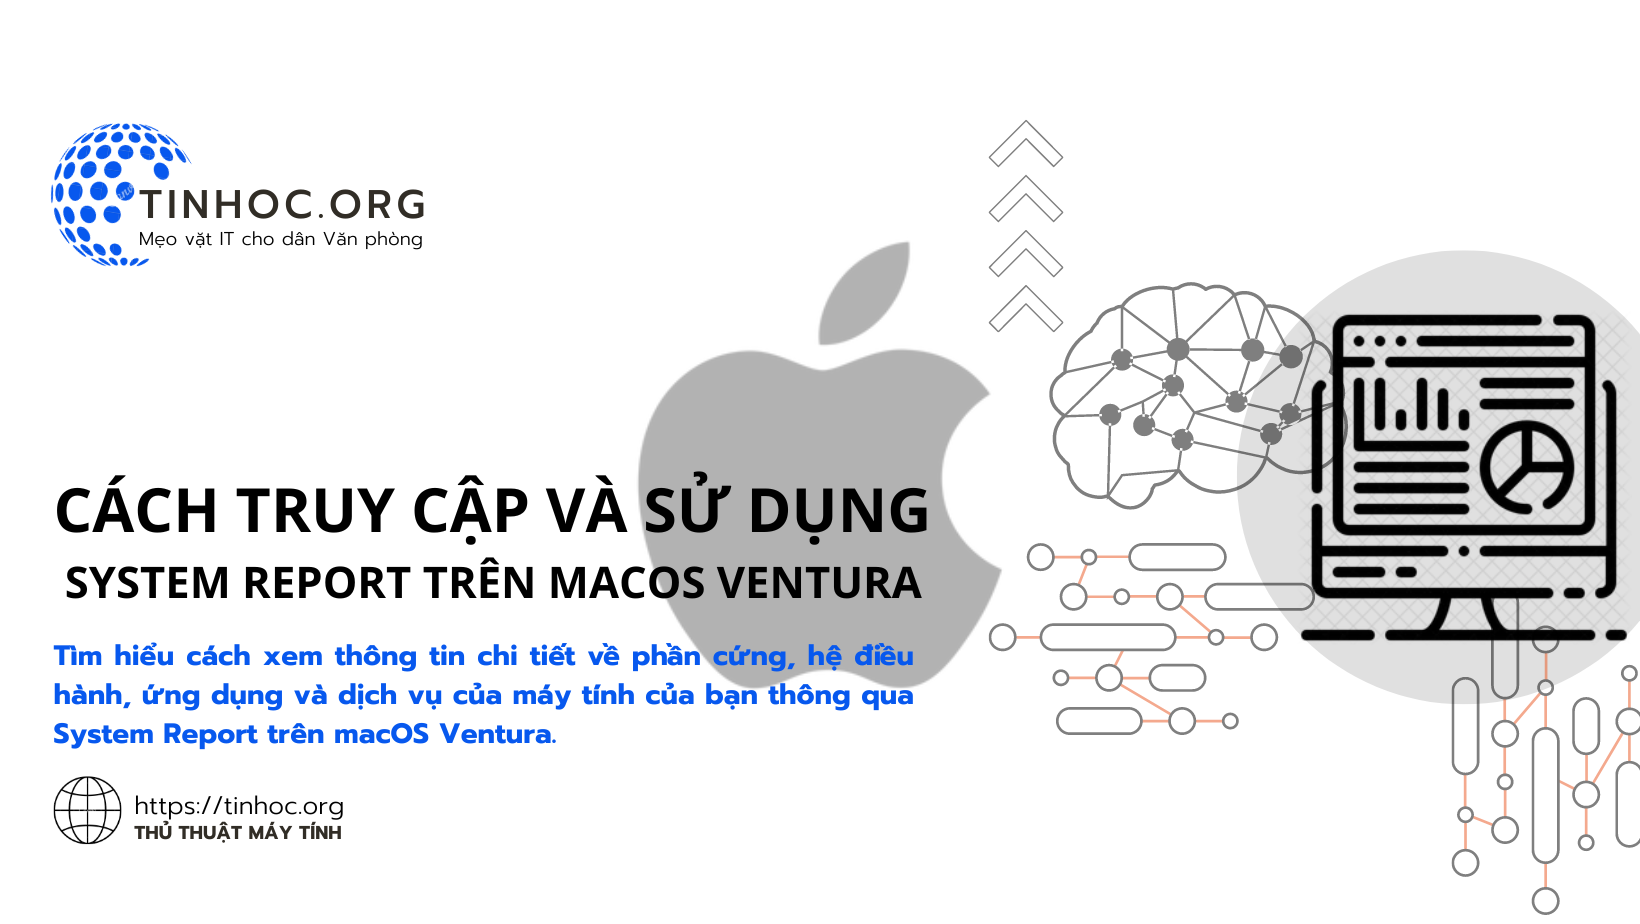 Tìm hiểu cách xem thông tin chi tiết về phần cứng, hệ điều hành, ứng dụng và dịch vụ của máy tính của bạn thông qua System Report trên macOS Ventura.